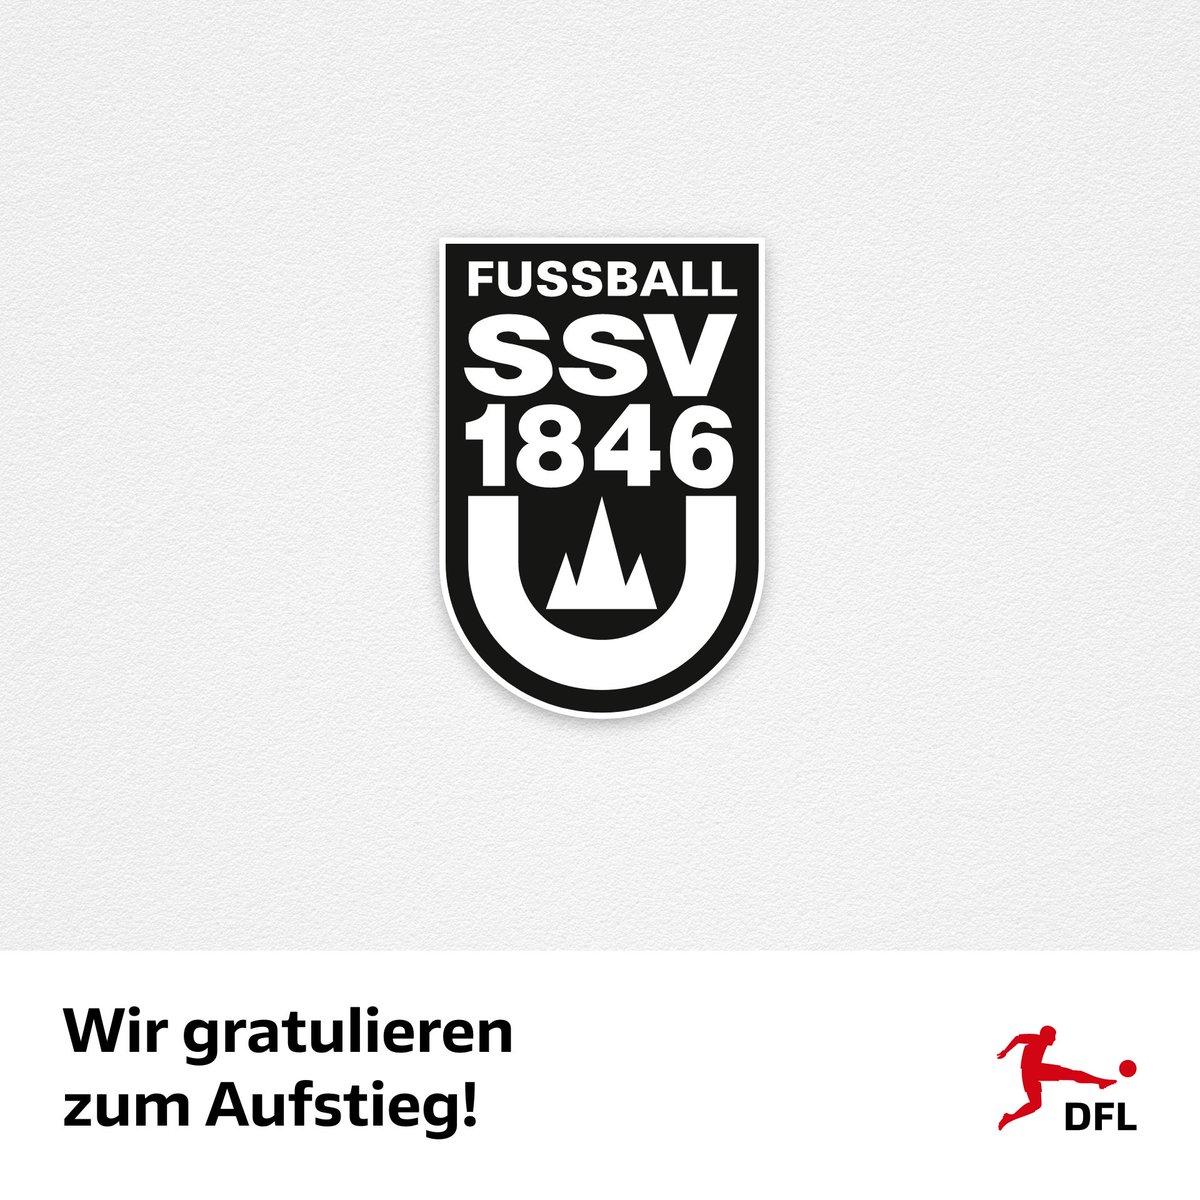 Herzliche Glückwünsche, SSV Ulm 1846!

Die DFL gratuliert dem @ssvulm1846fb zum direkten Durchmarsch aus der Regionalliga und der damit verbundenen Rückkehr in die 2. Bundesliga ➡️ dfl.de/de/aktuelles/g…